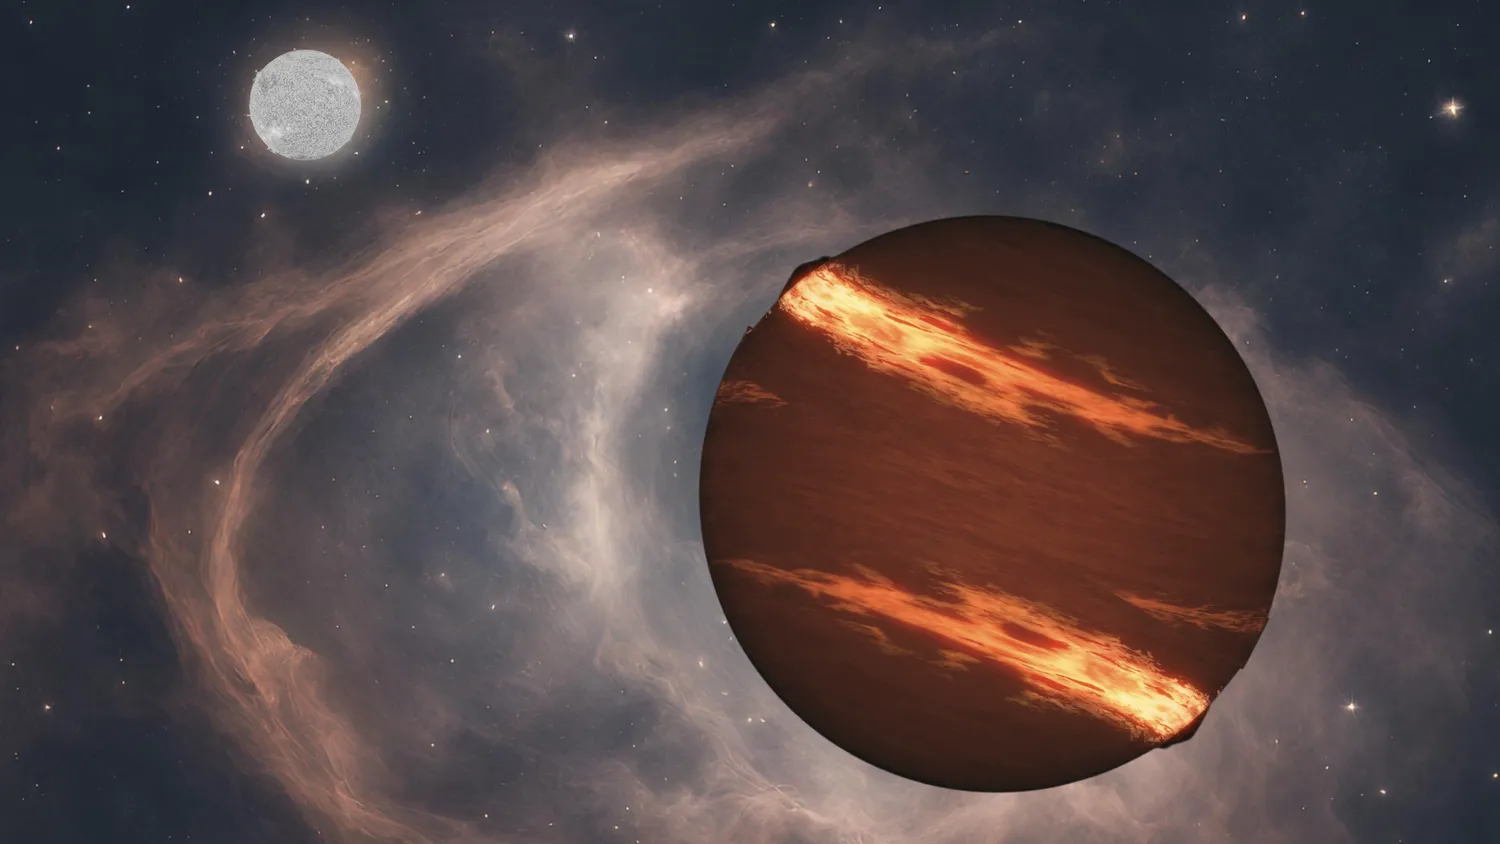 Mehr über den Artikel erfahren James-Webb-Weltraumteleskop entdeckt 2 seltene Exoplaneten, die um tote Sterne kreisen